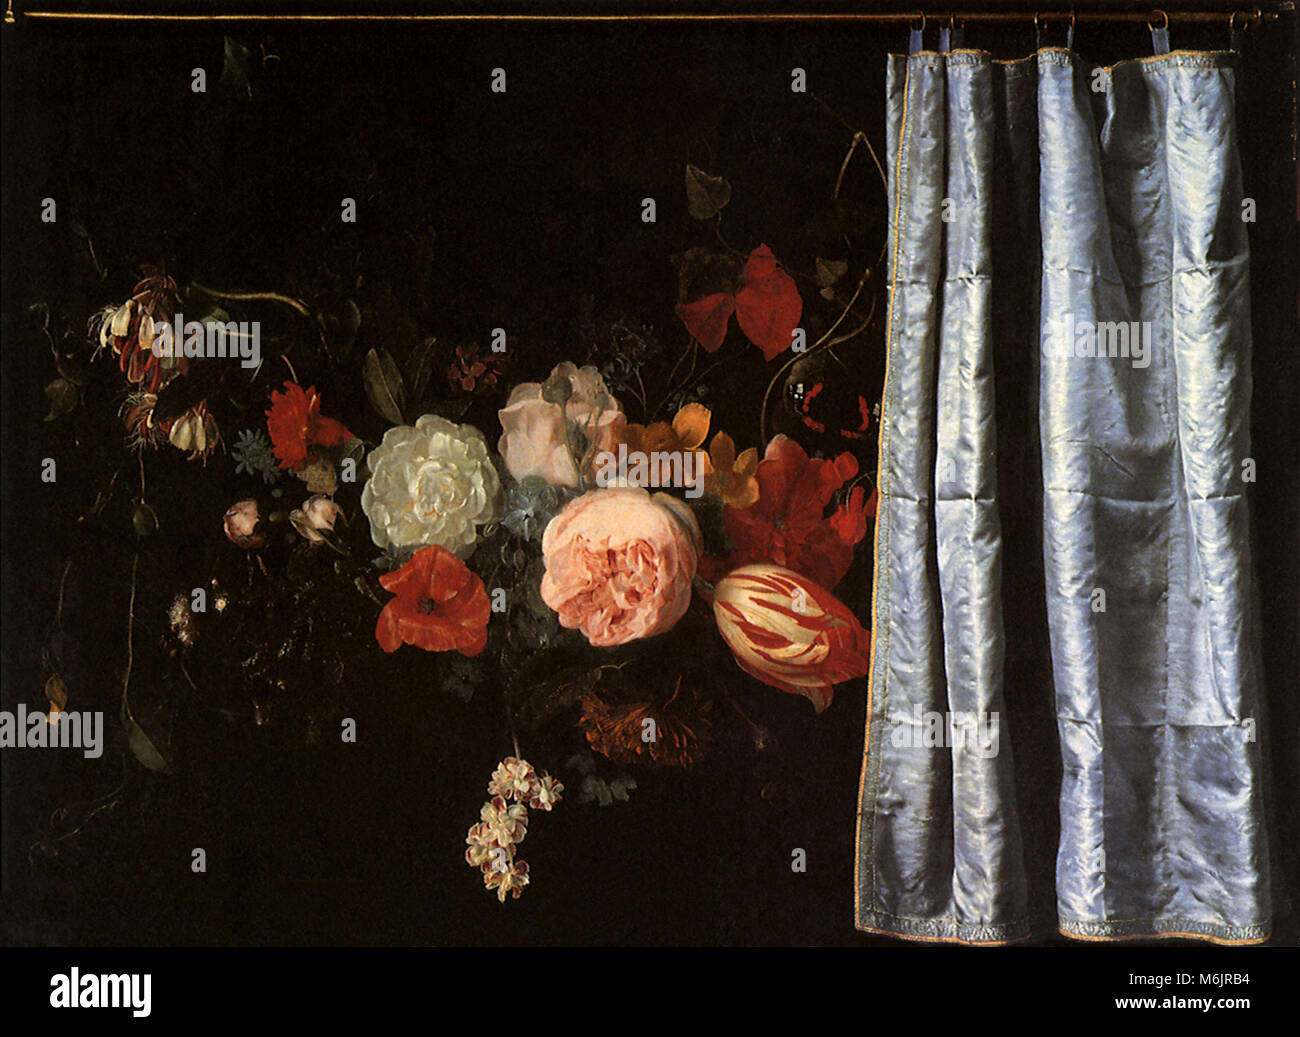 Flower Still Life with Curtain, van der Spelt, Adrian, 1658. Stock Photo